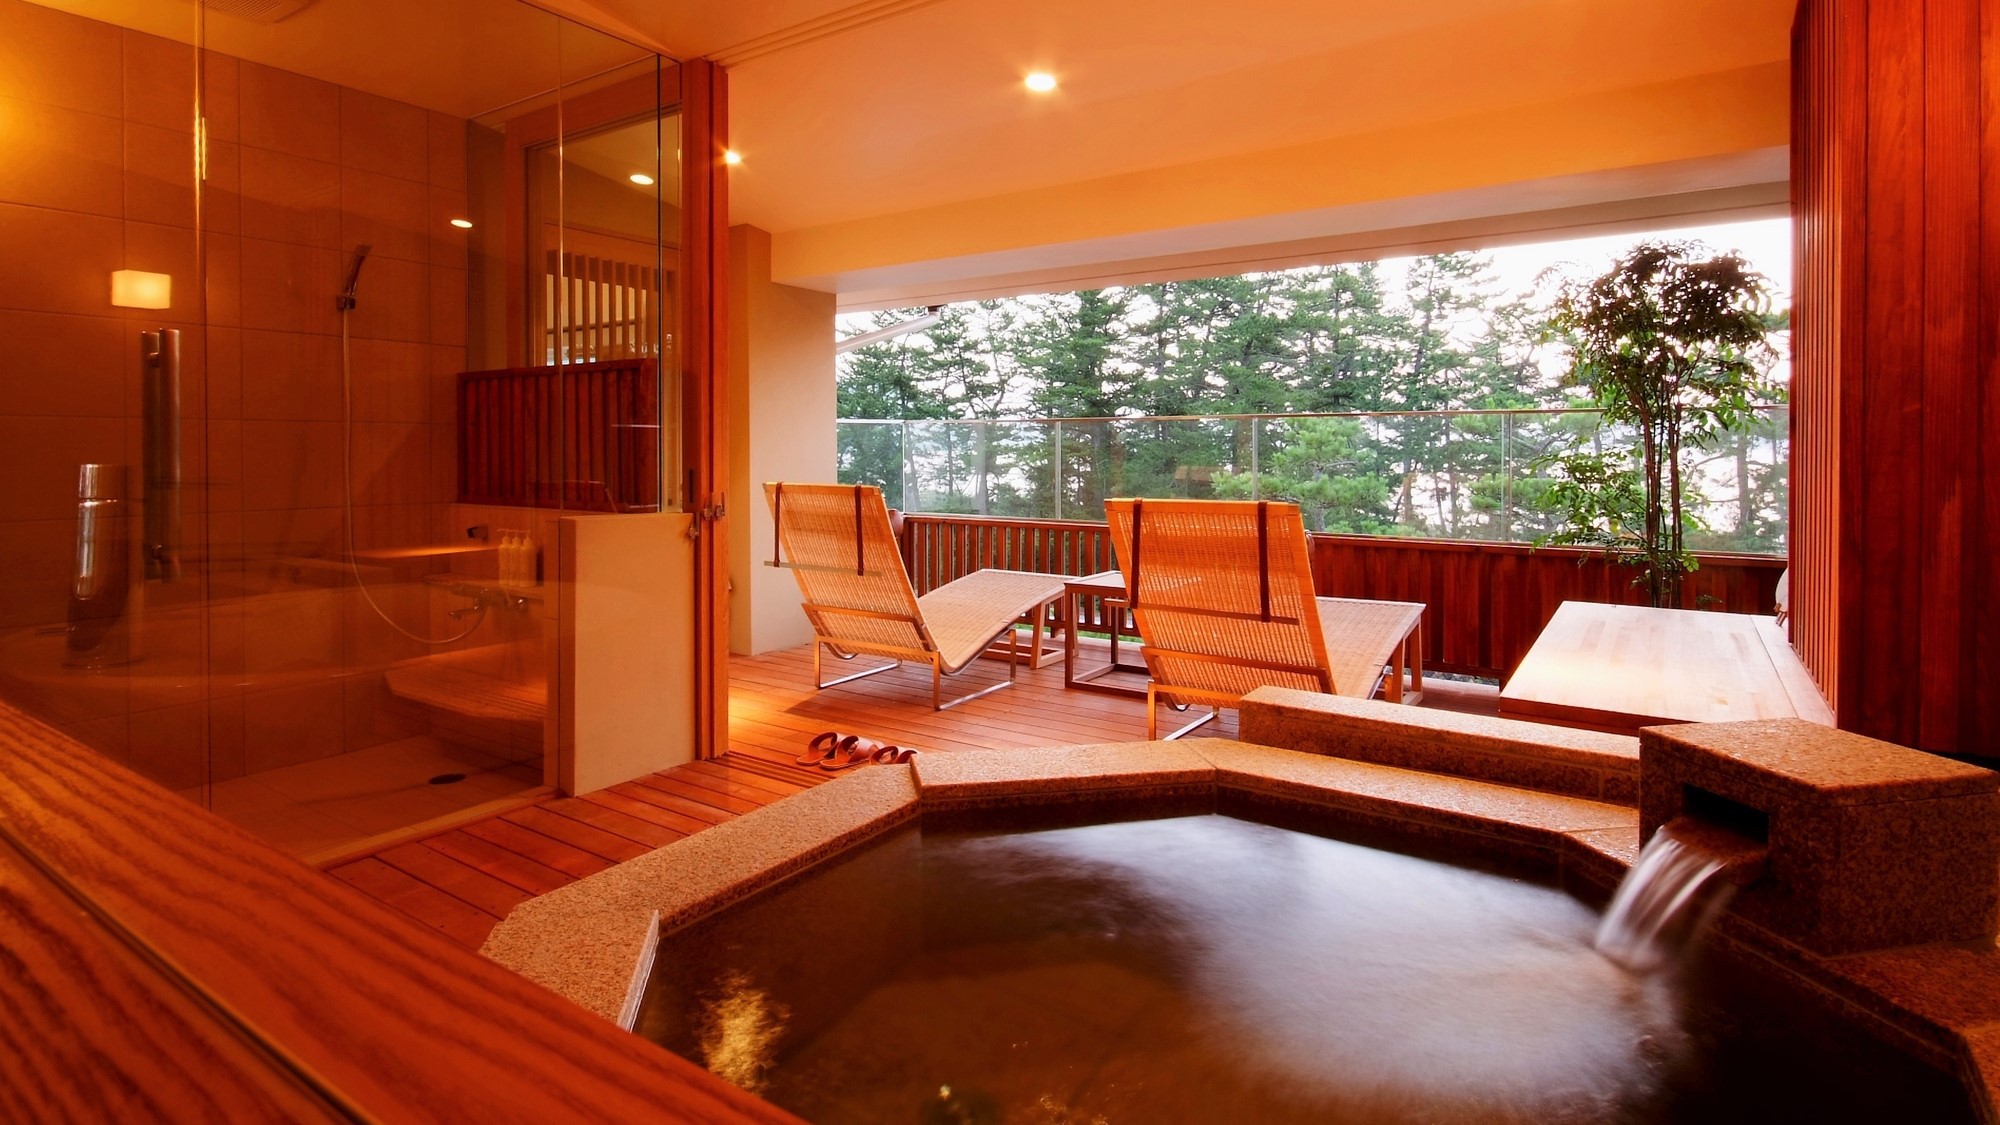 【特別室】客室露天風呂と、オープンテラス。刻々と移り変わる天橋立の景色をお楽しみ下さい。